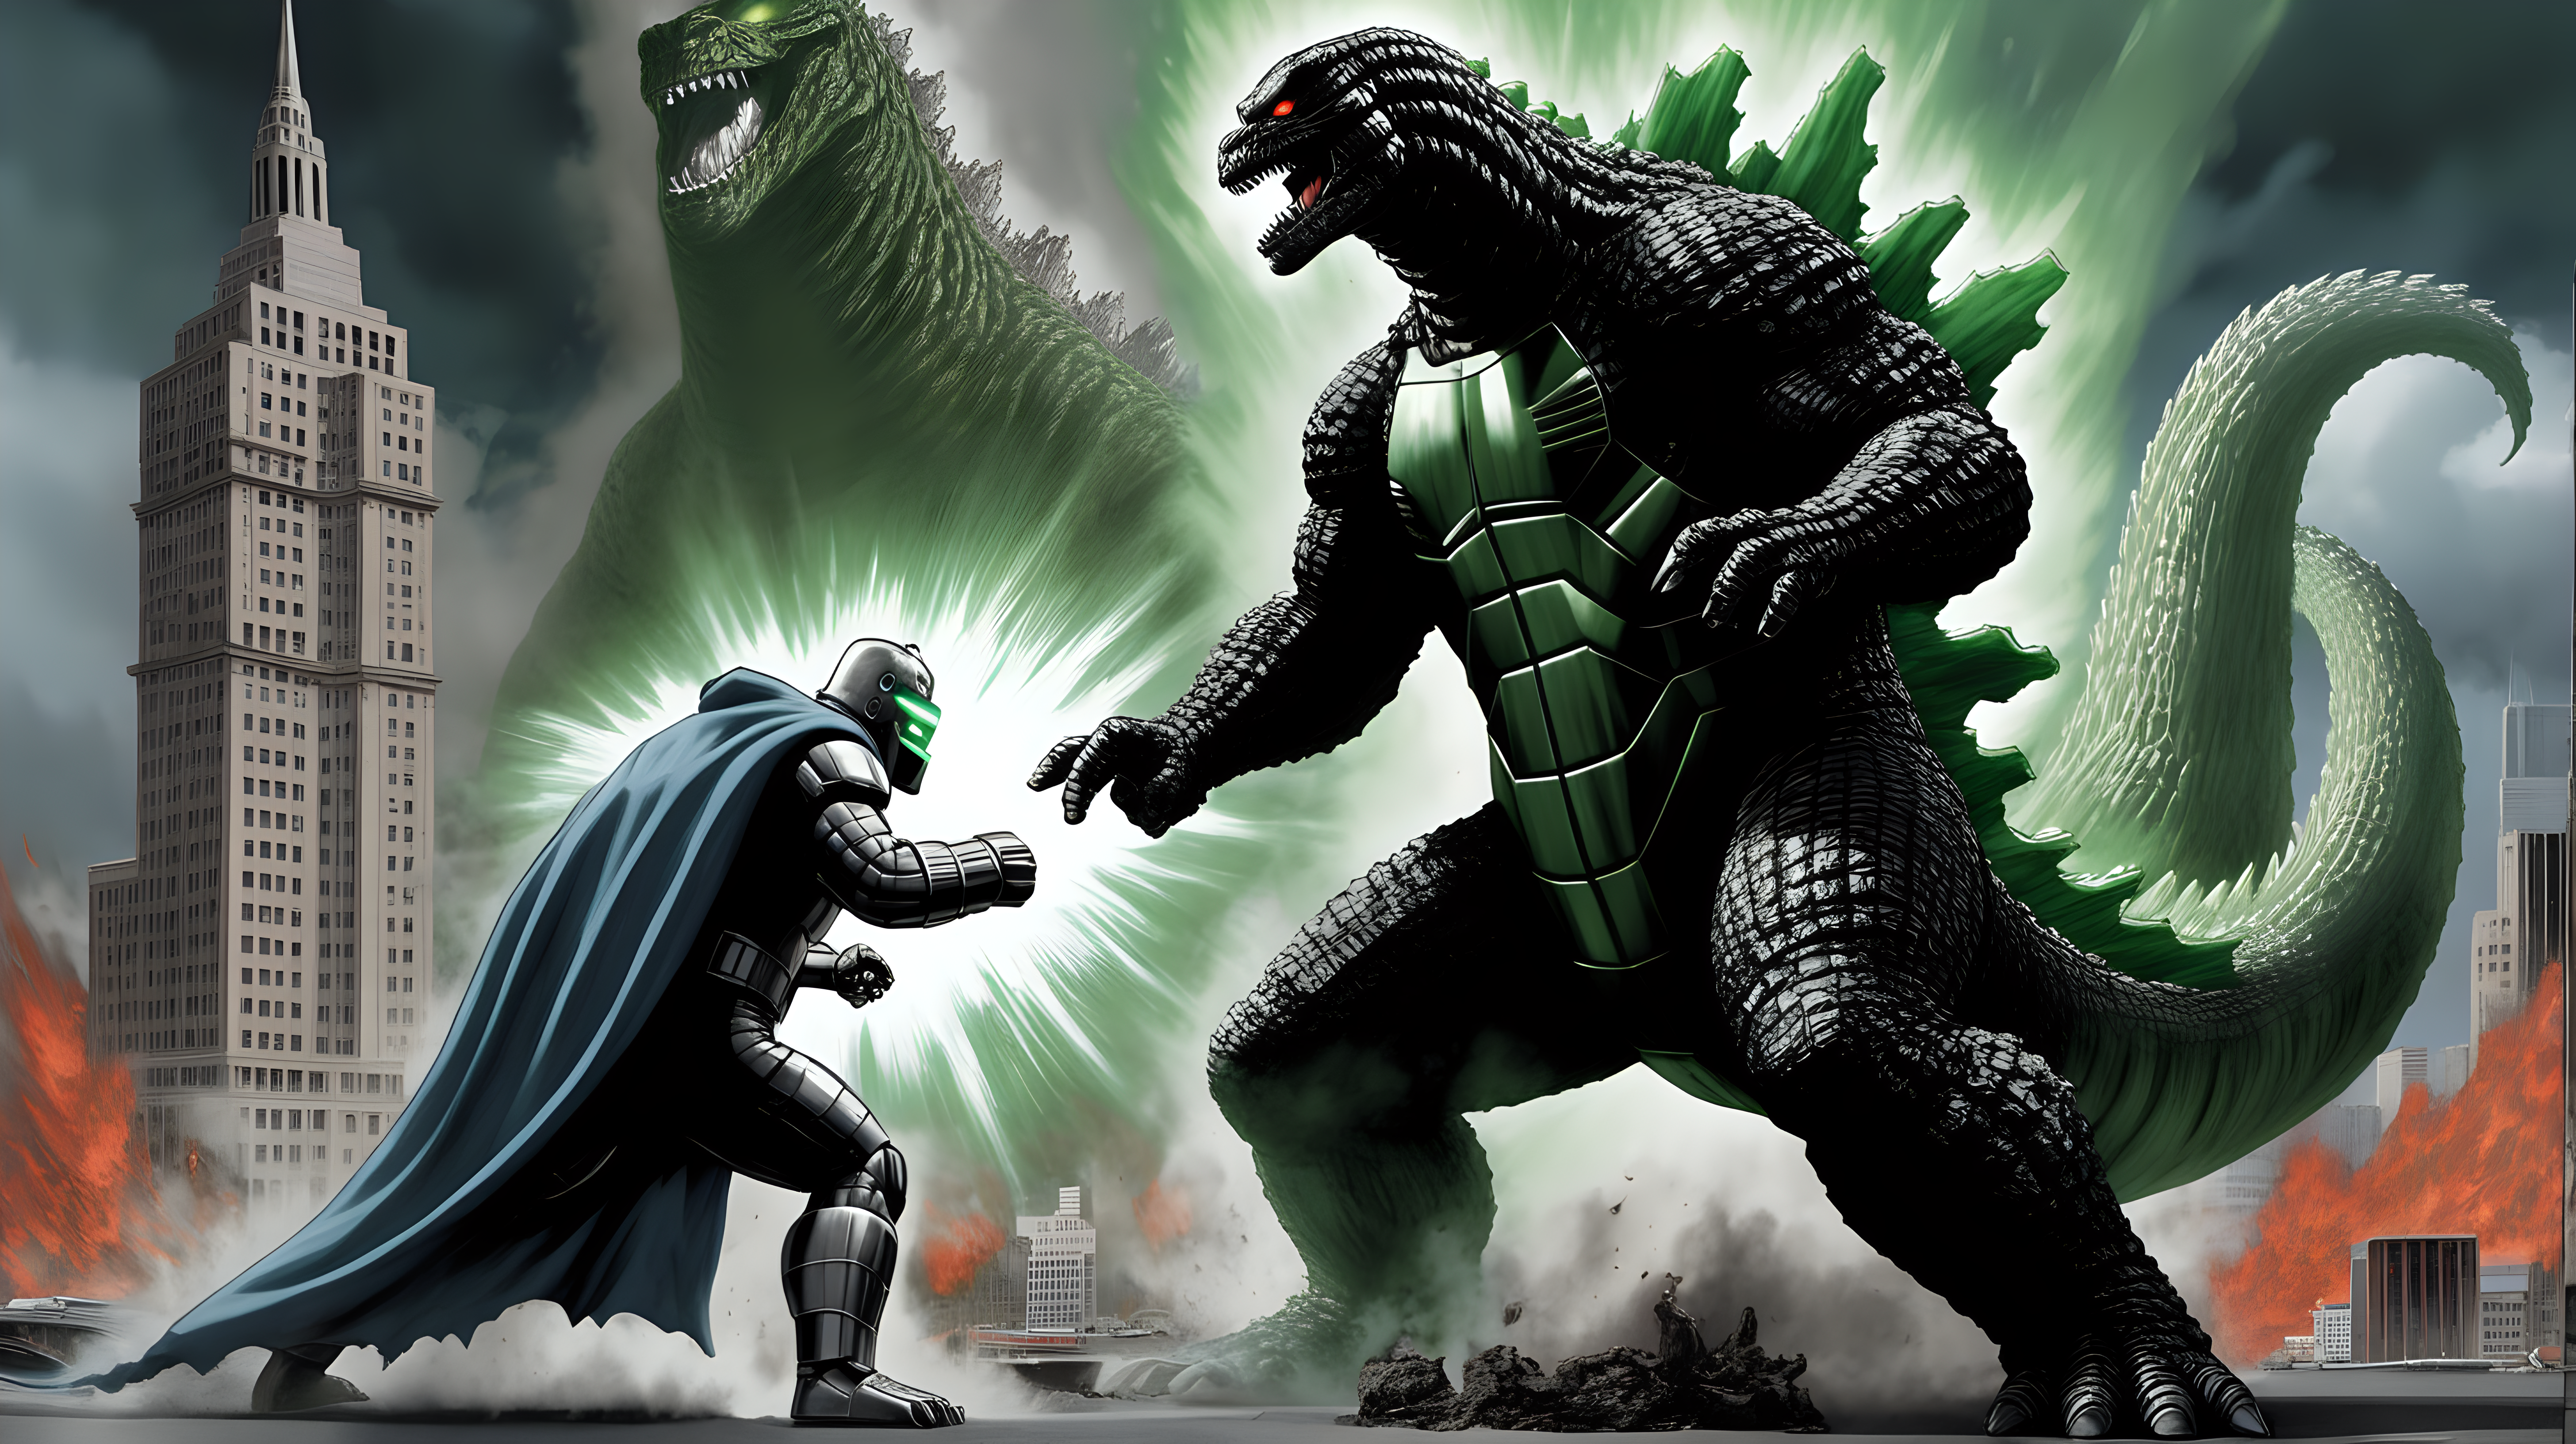 Godzilla fighting Doctor Doom